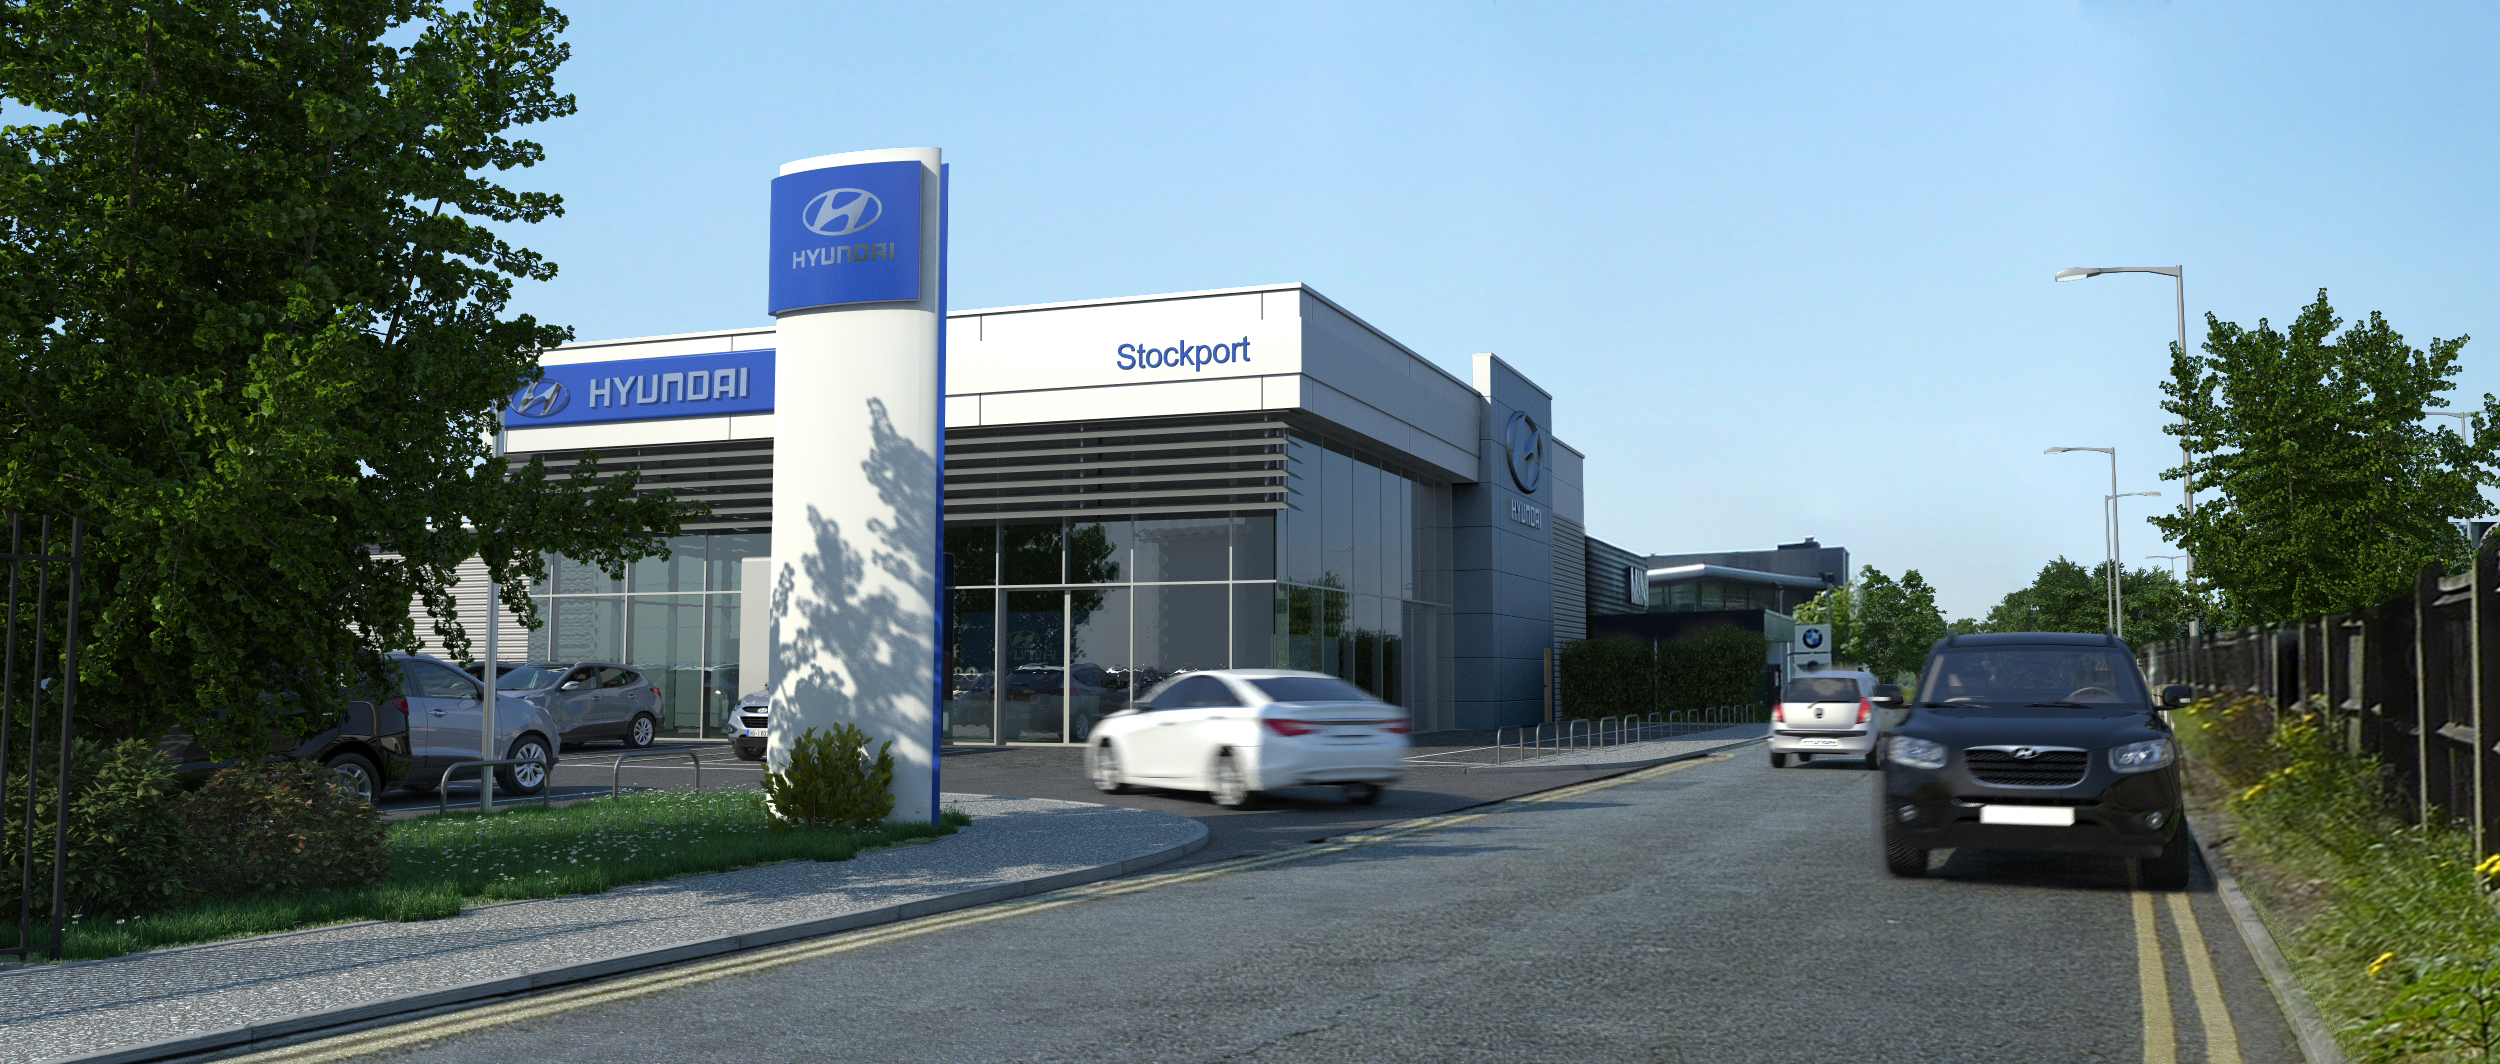 Hyundai Stockport Dealership